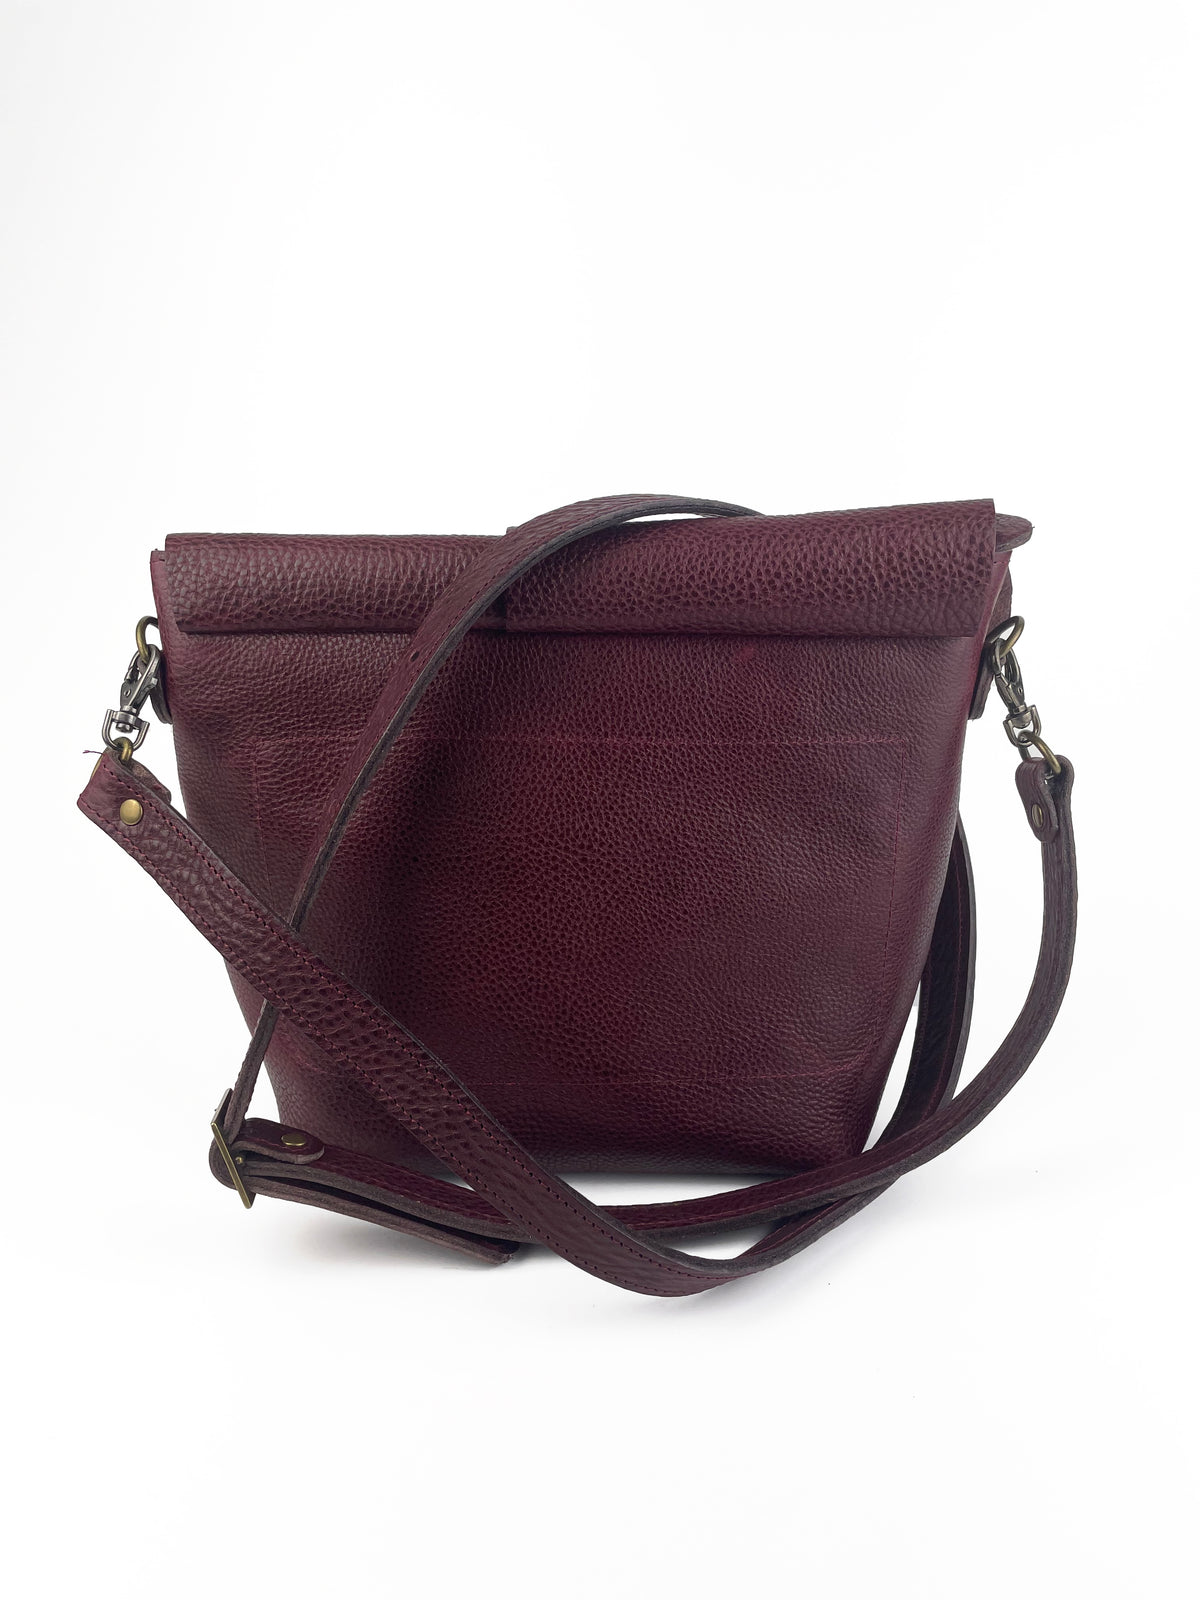 Petal Bag in Dark Scarlet leather